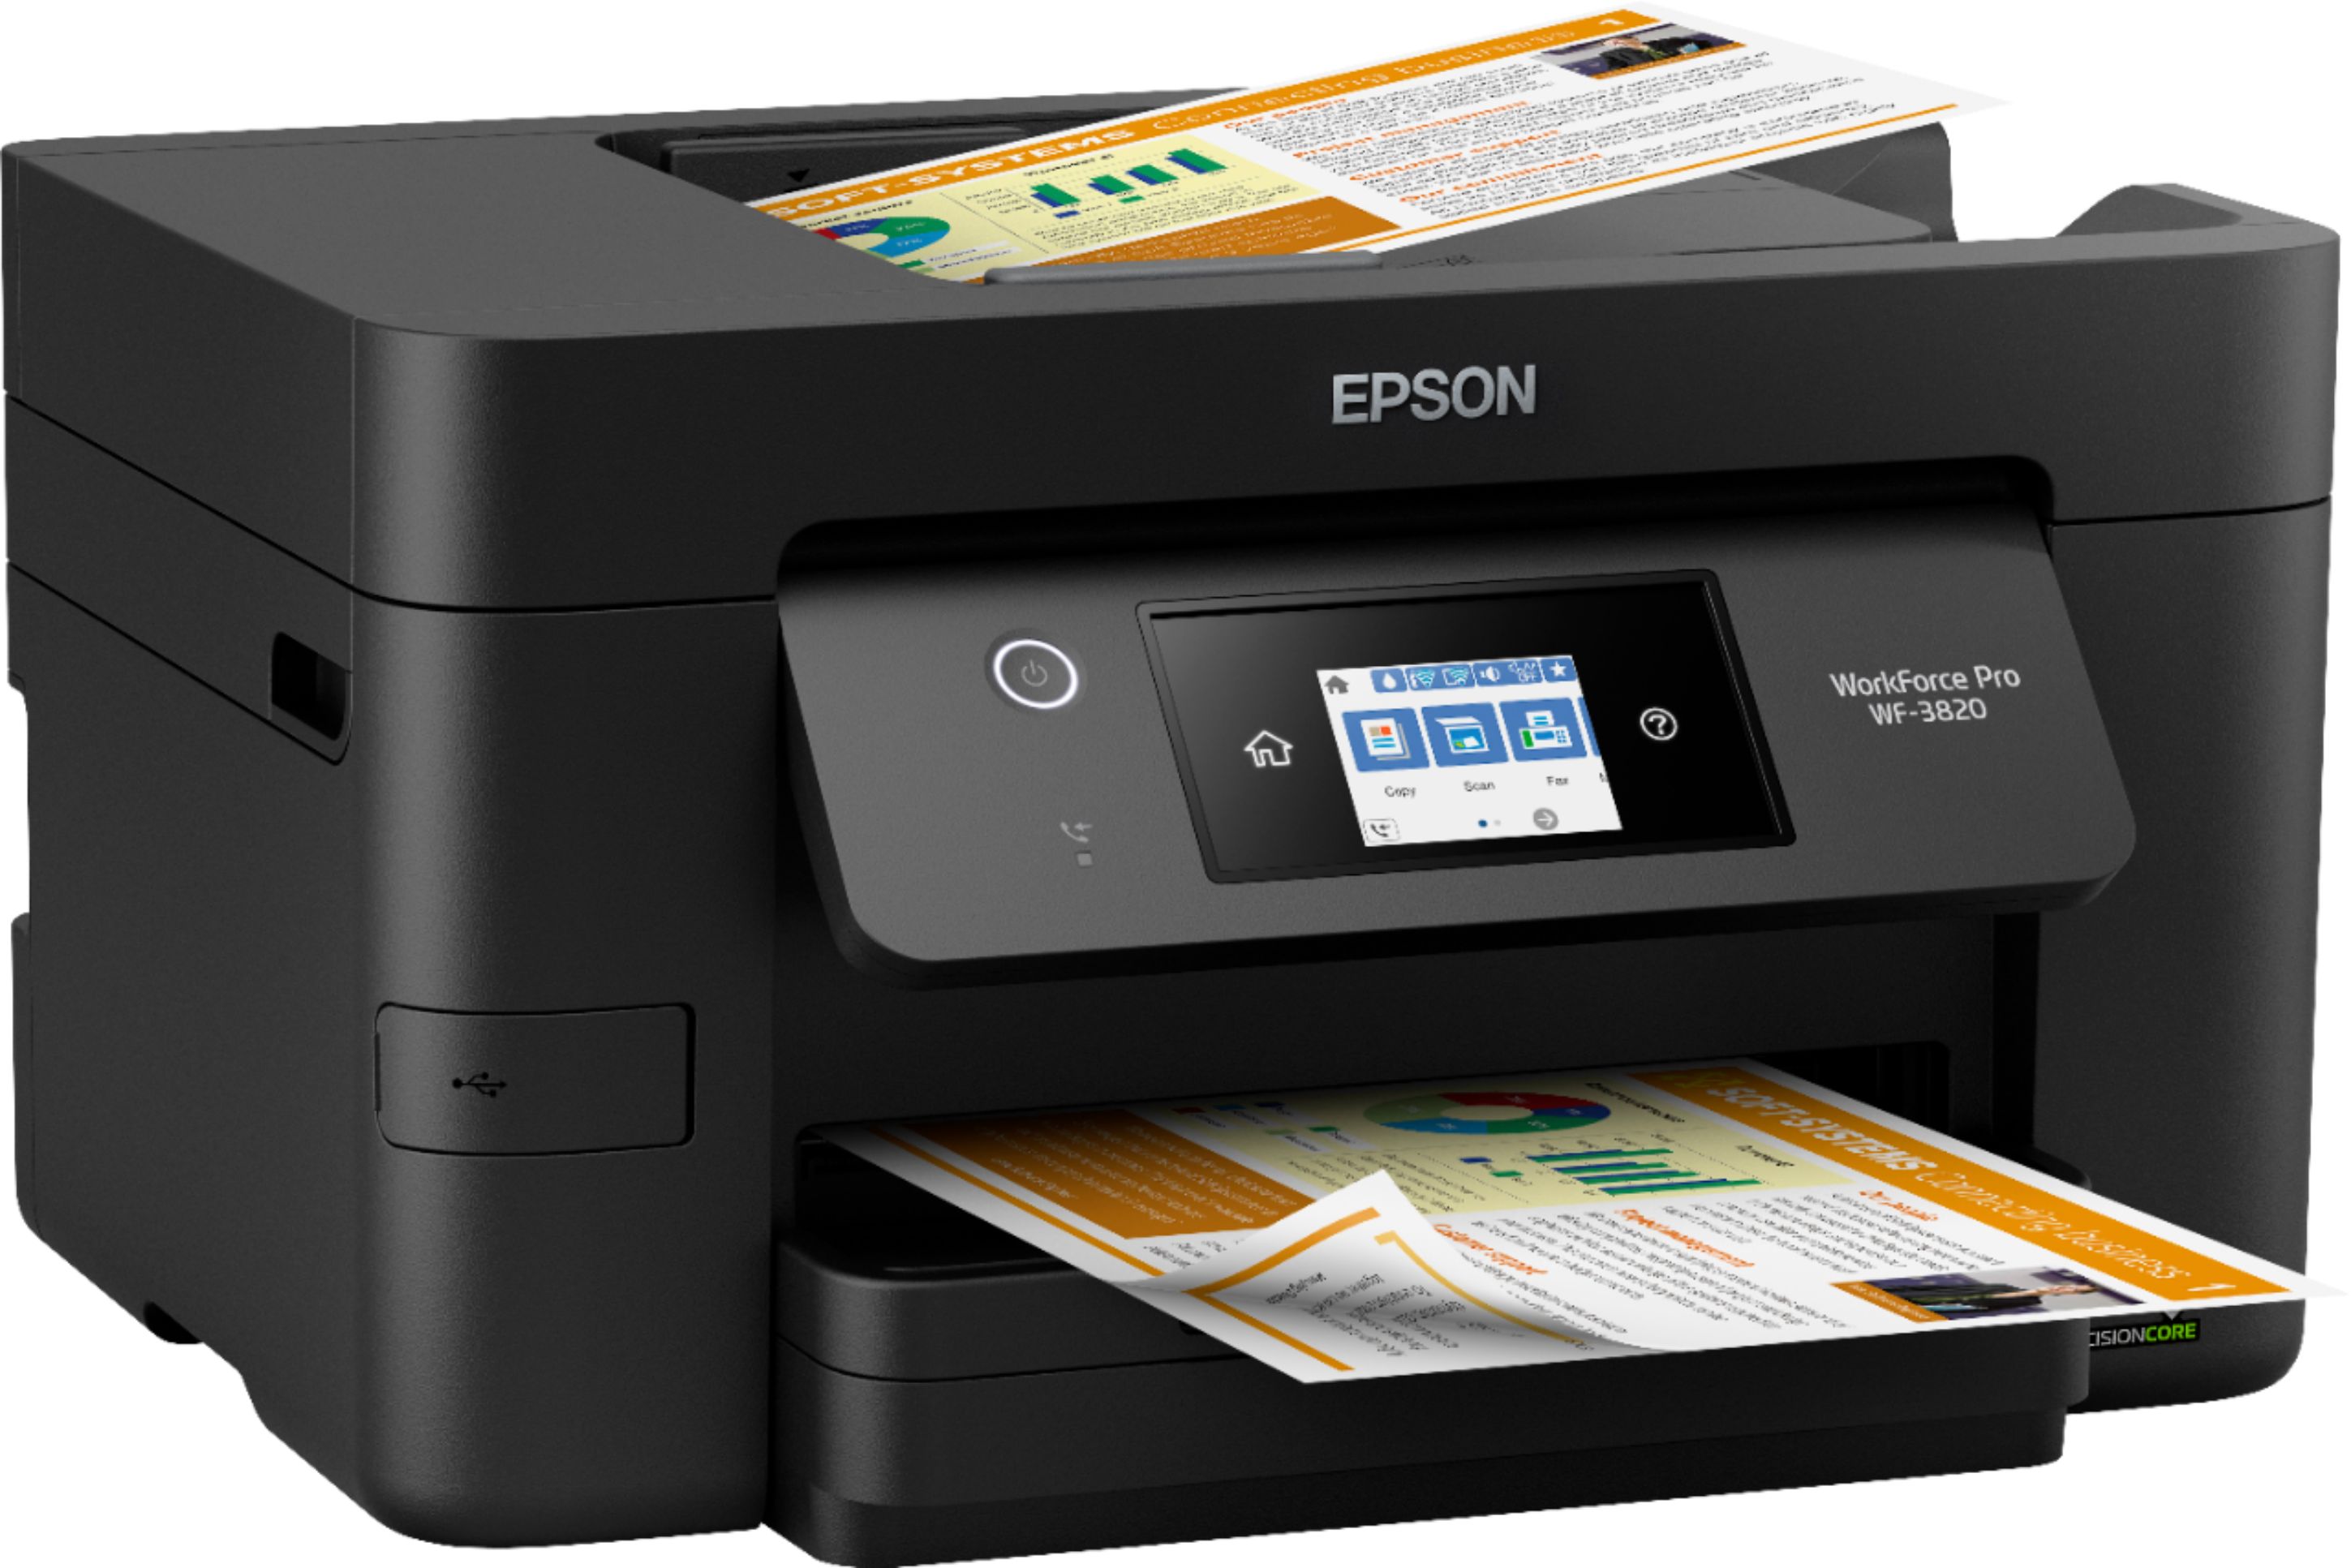 Epson प्रिंटर